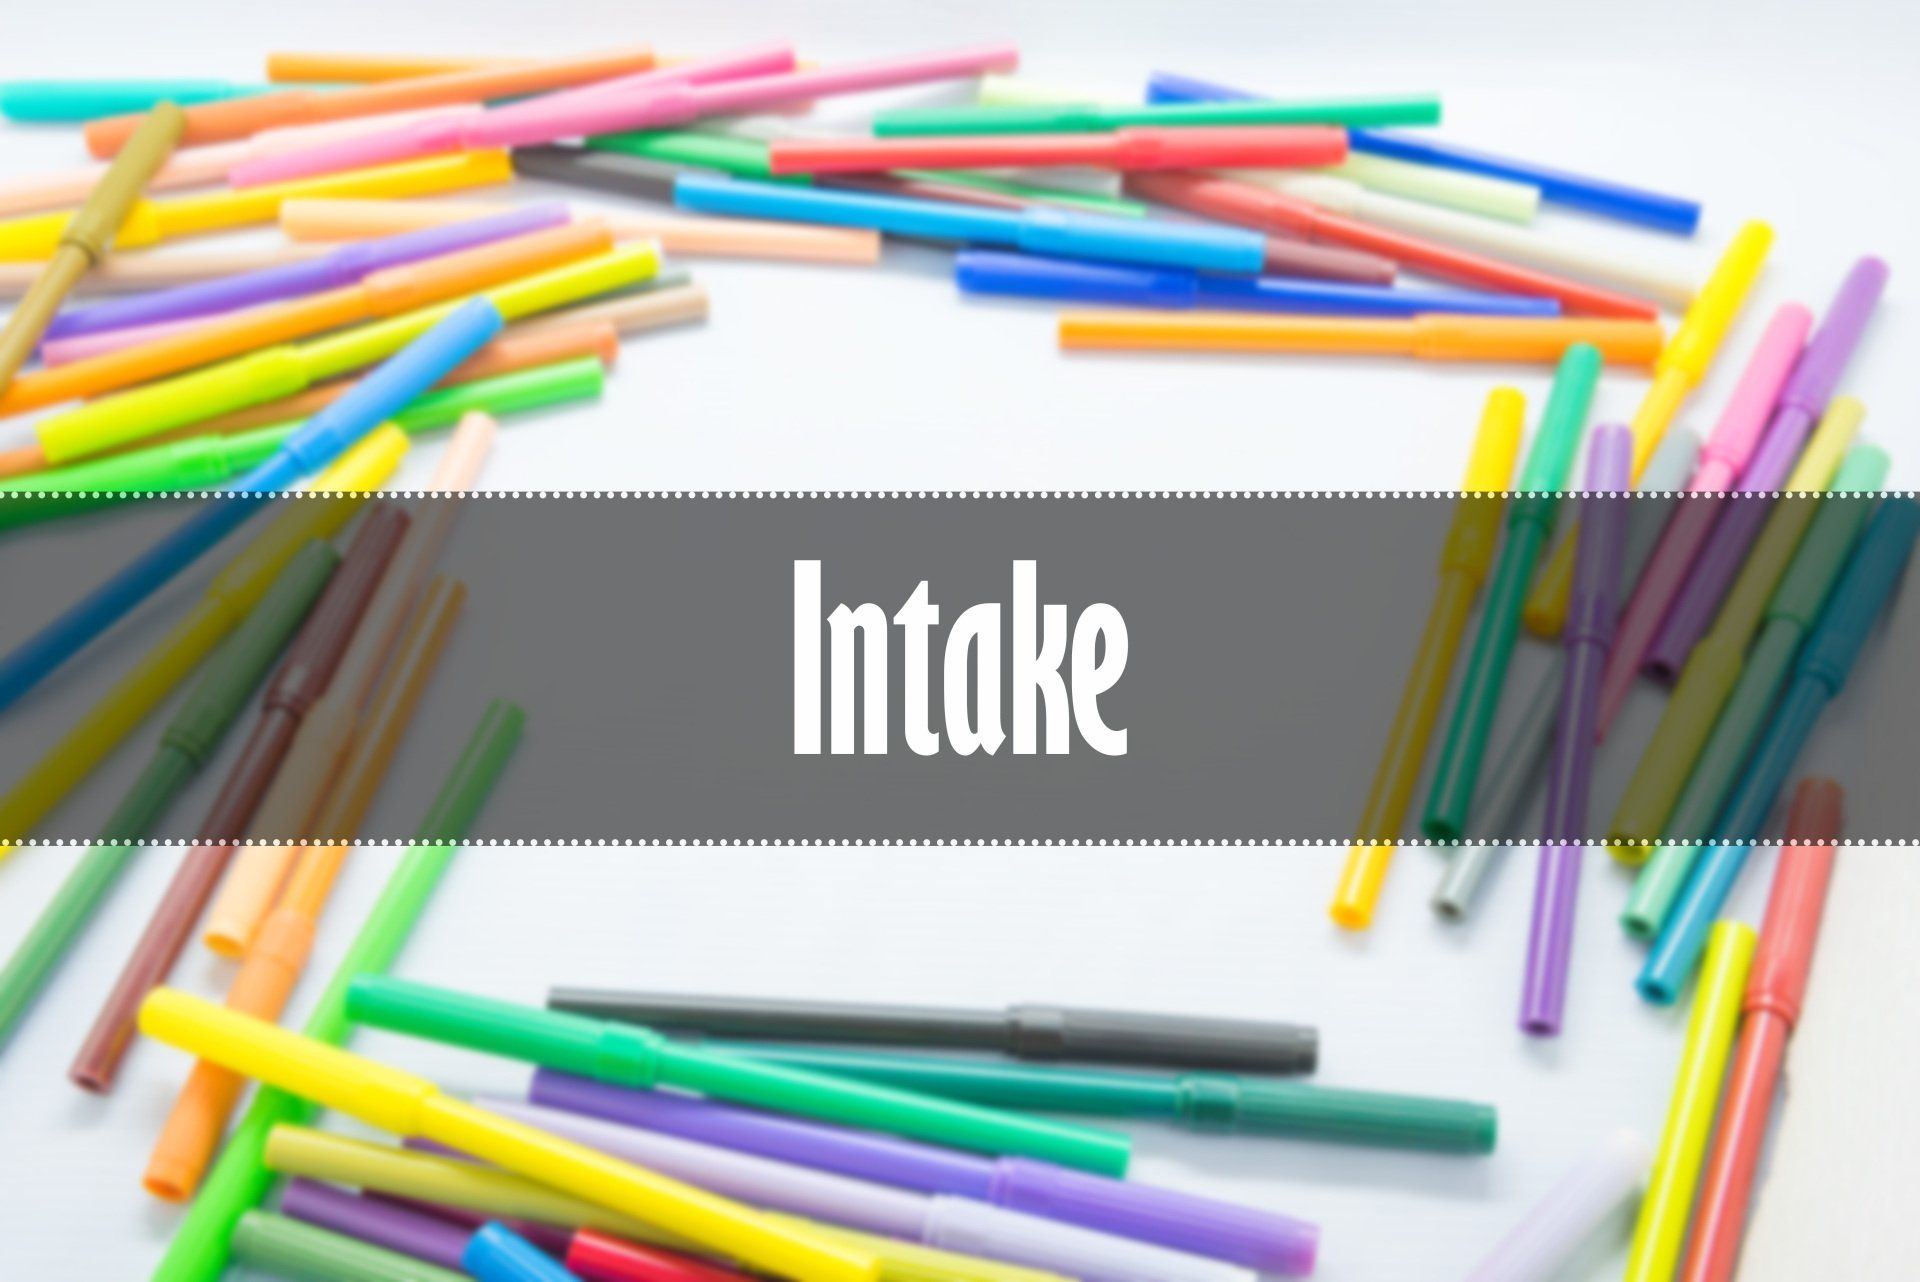 het woord intake is geschreven op een achtergrond van allerlei kleuren viltstiften